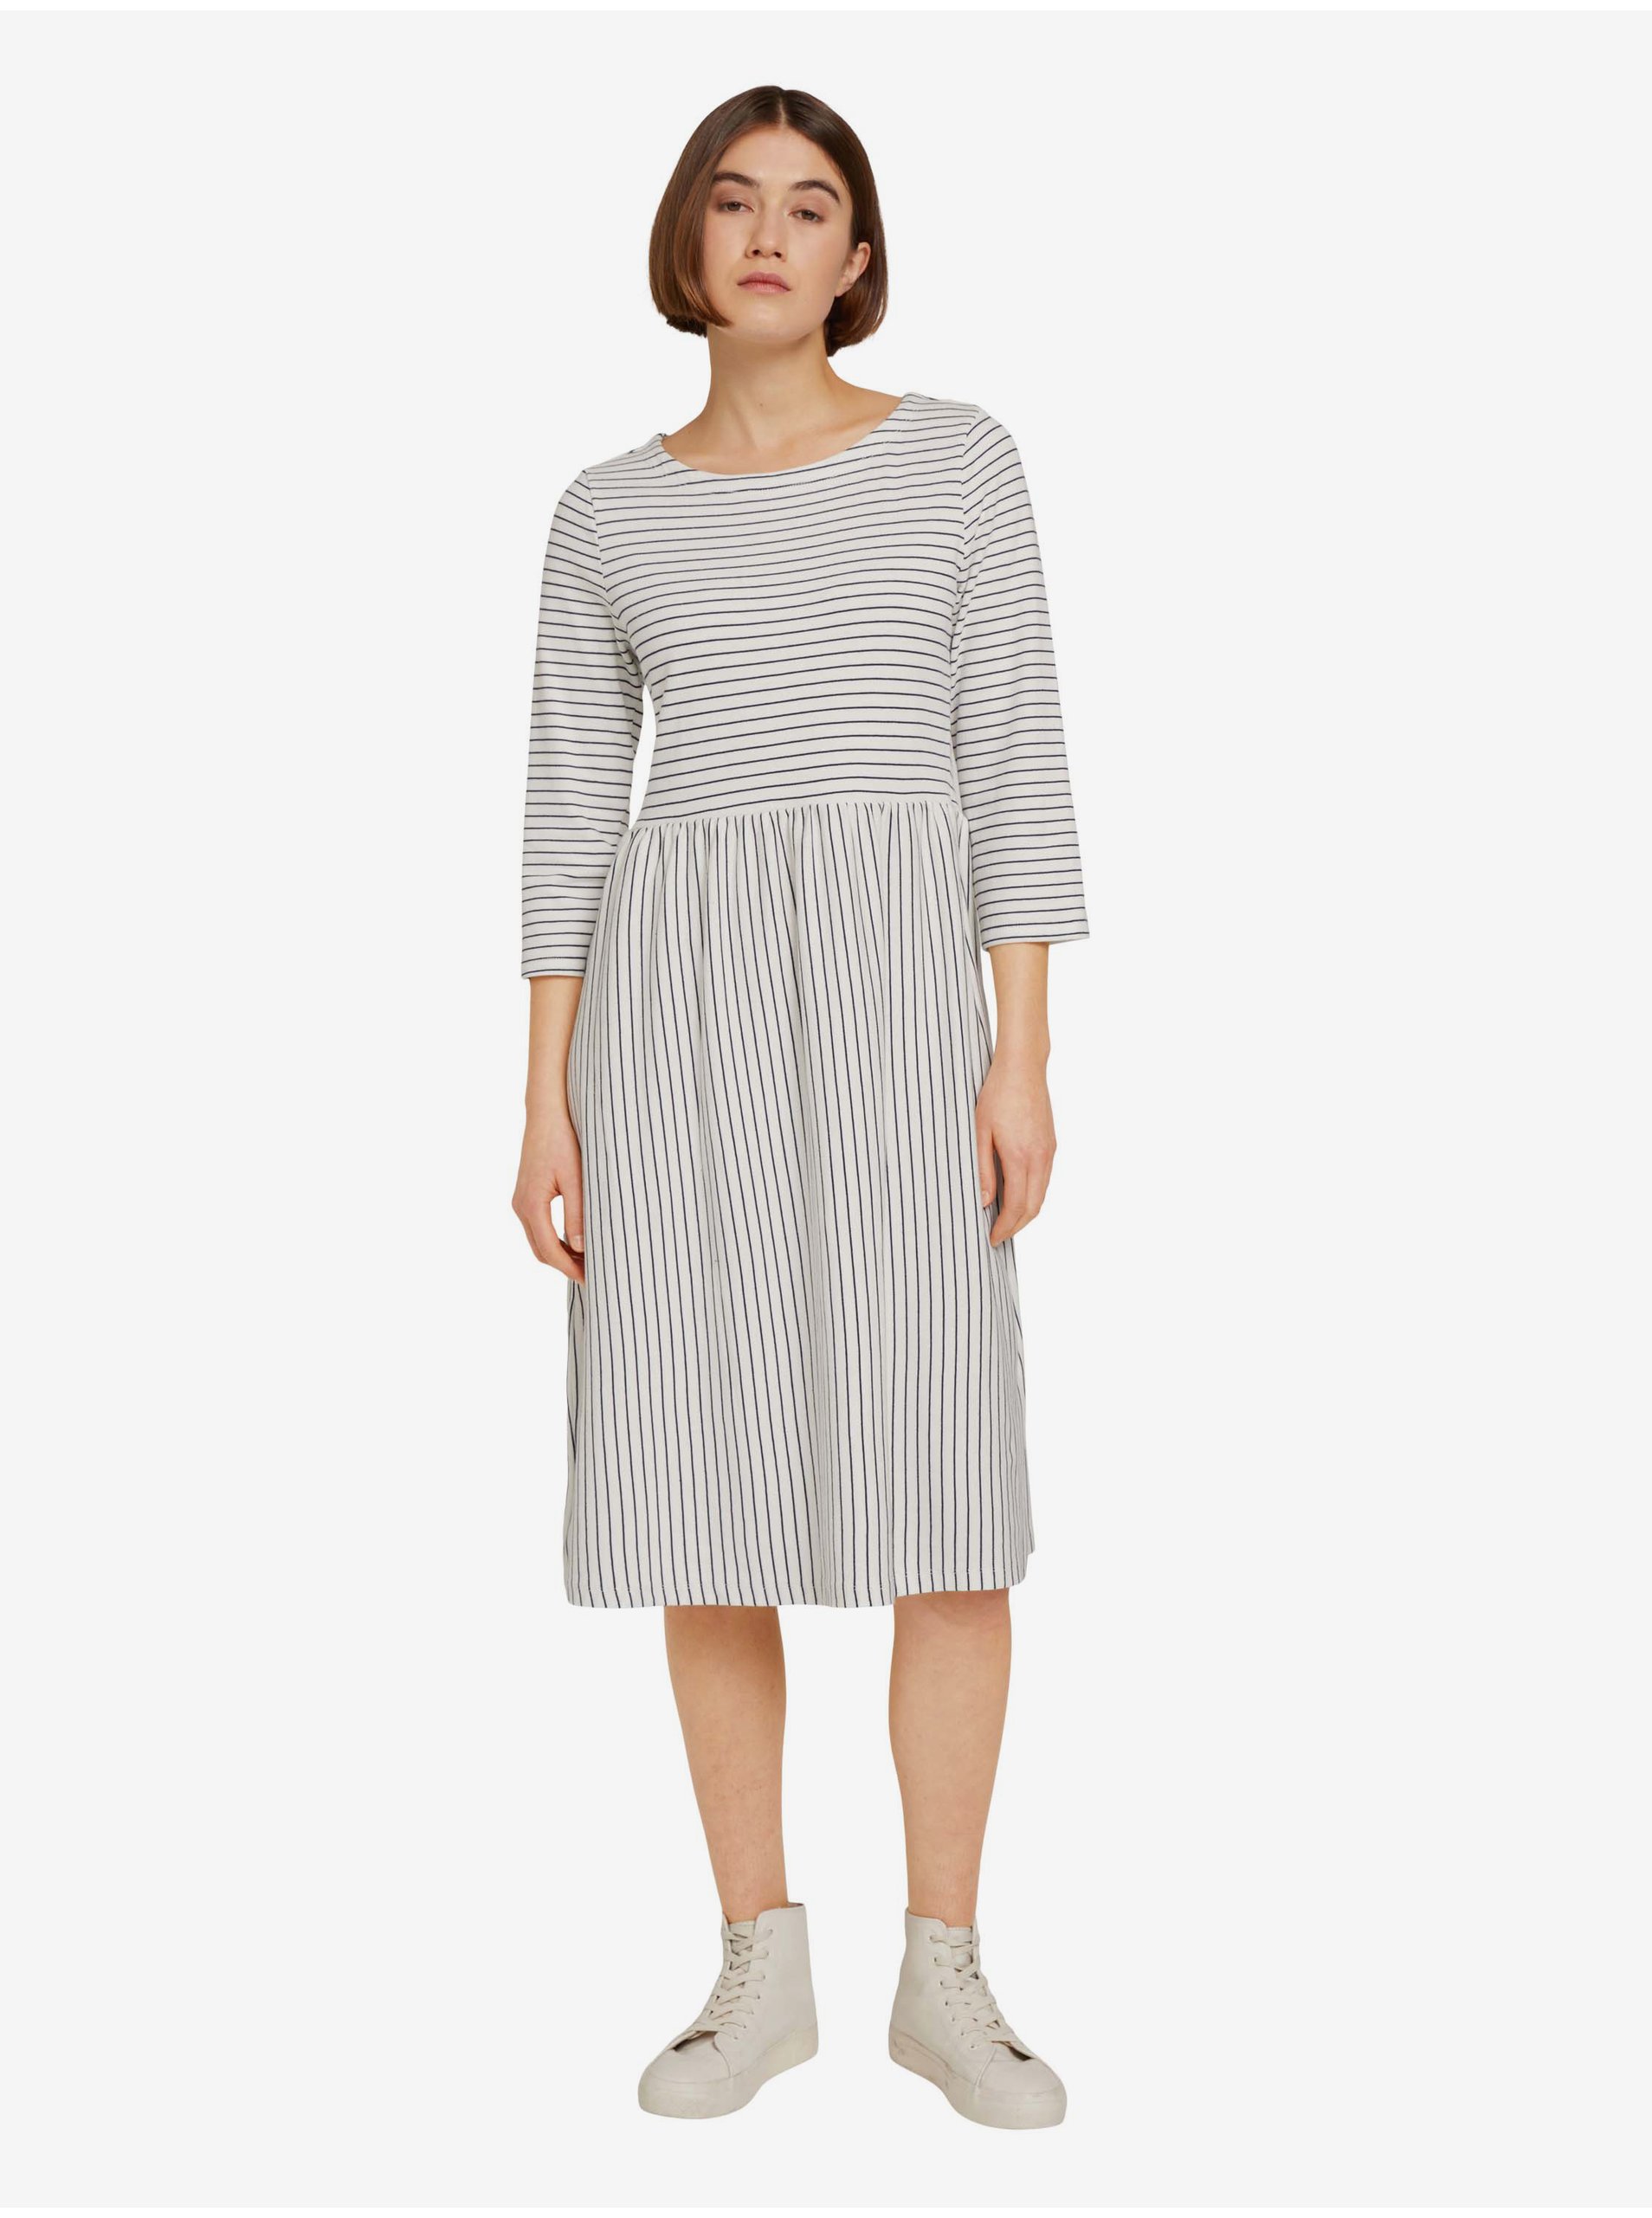 E-shop Bílé dámské pruhované šaty Tom Tailor Denim